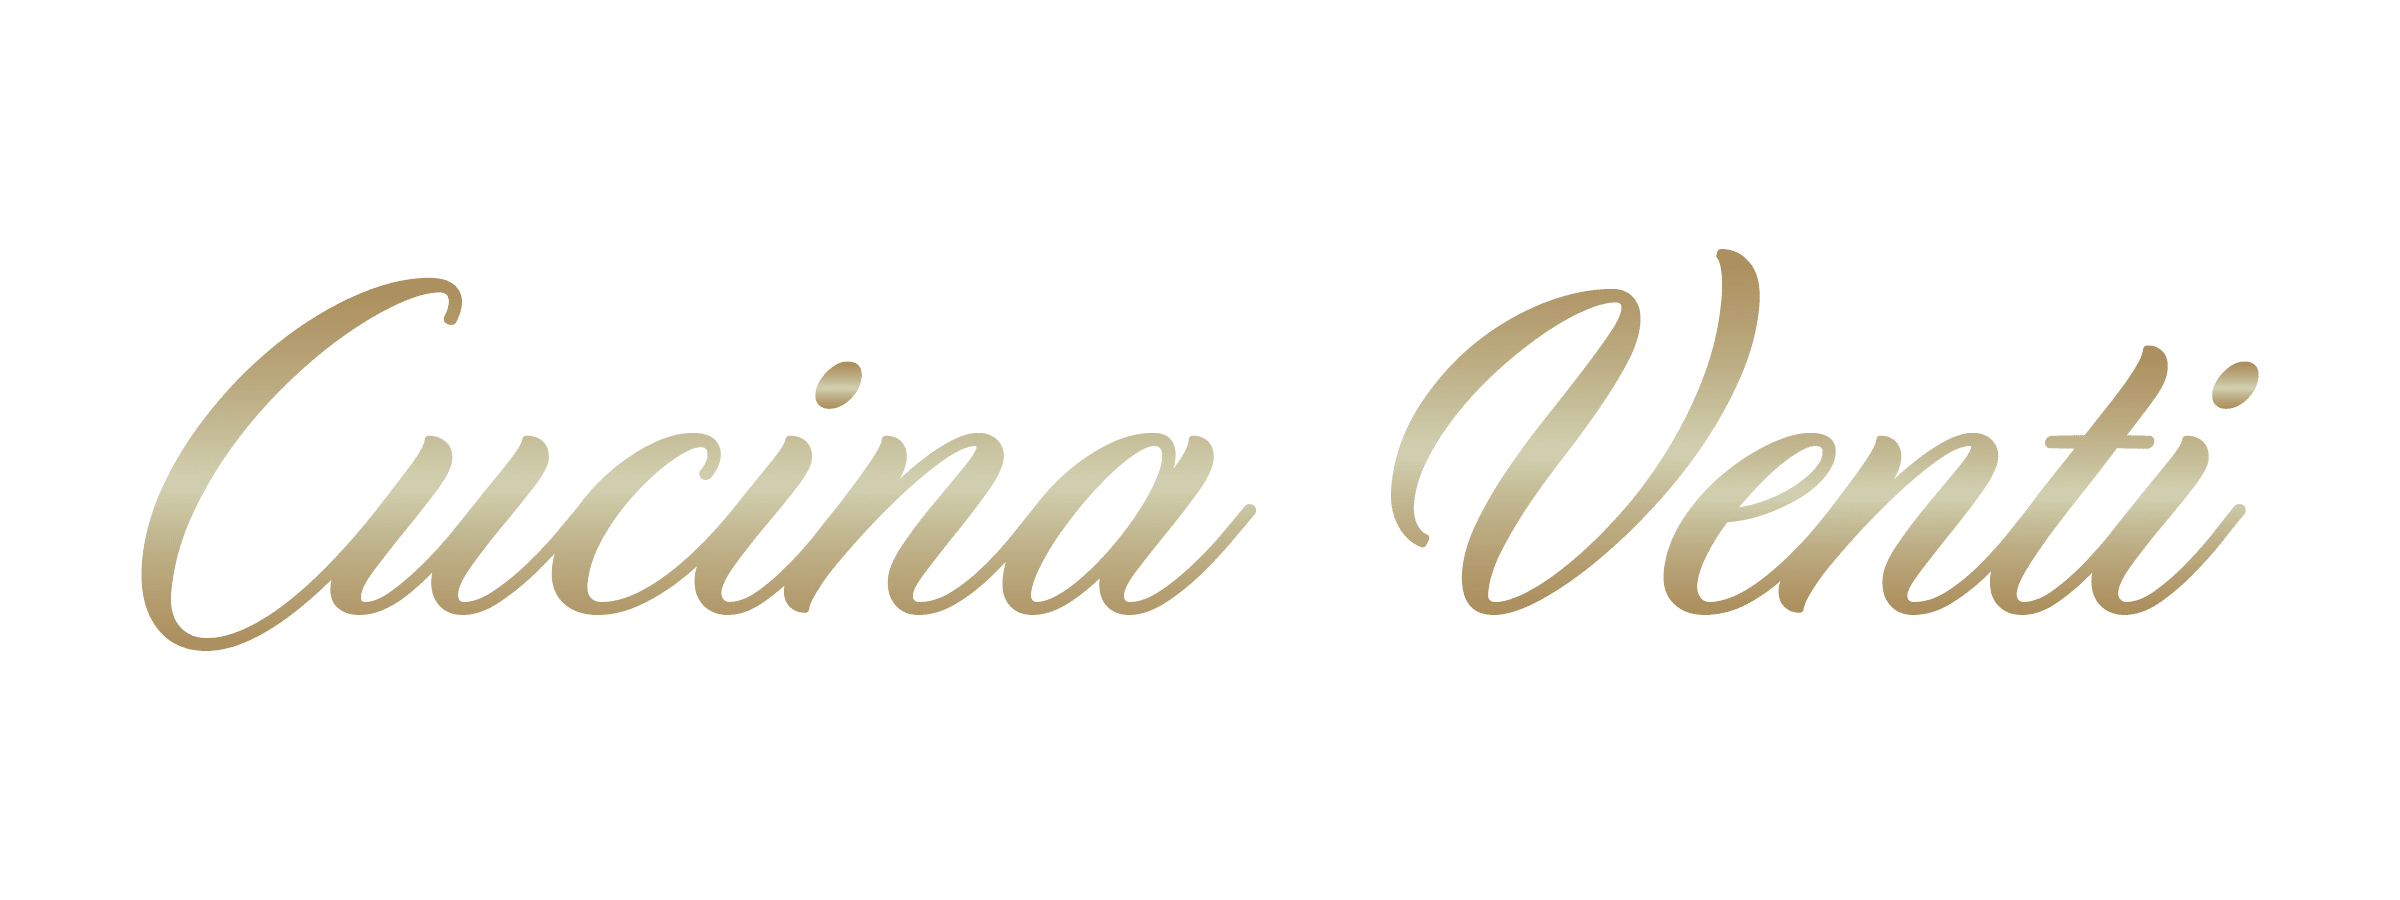 CucinaVenti-logo-01 (1) (1)